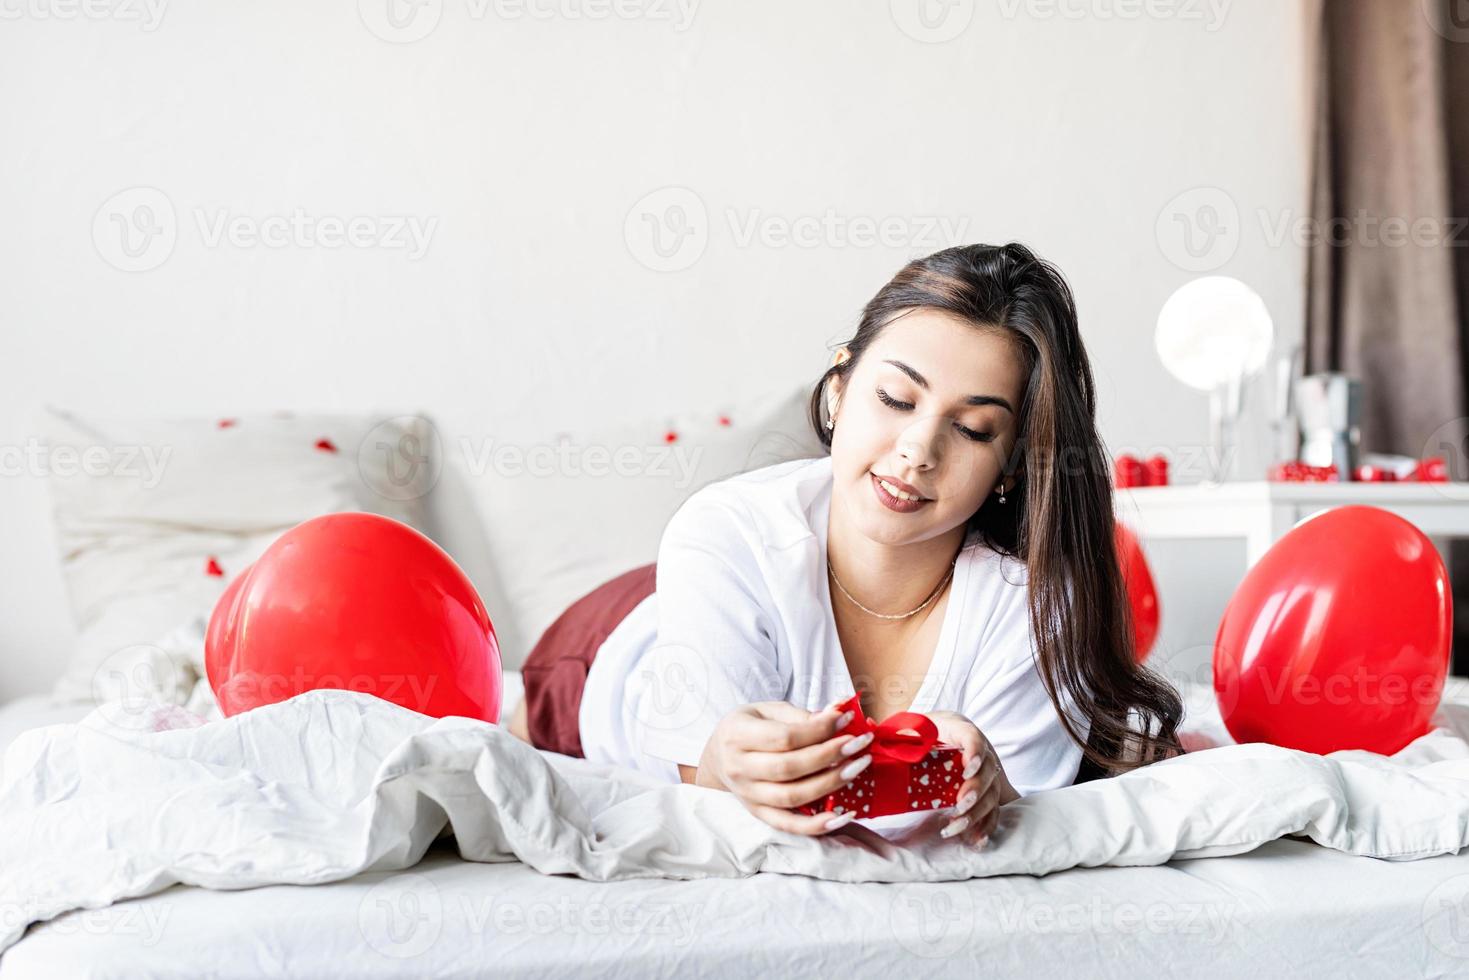 Jeune femme brune heureuse allongée dans le lit avec des ballons en forme de coeur rouge déballant le présent photo